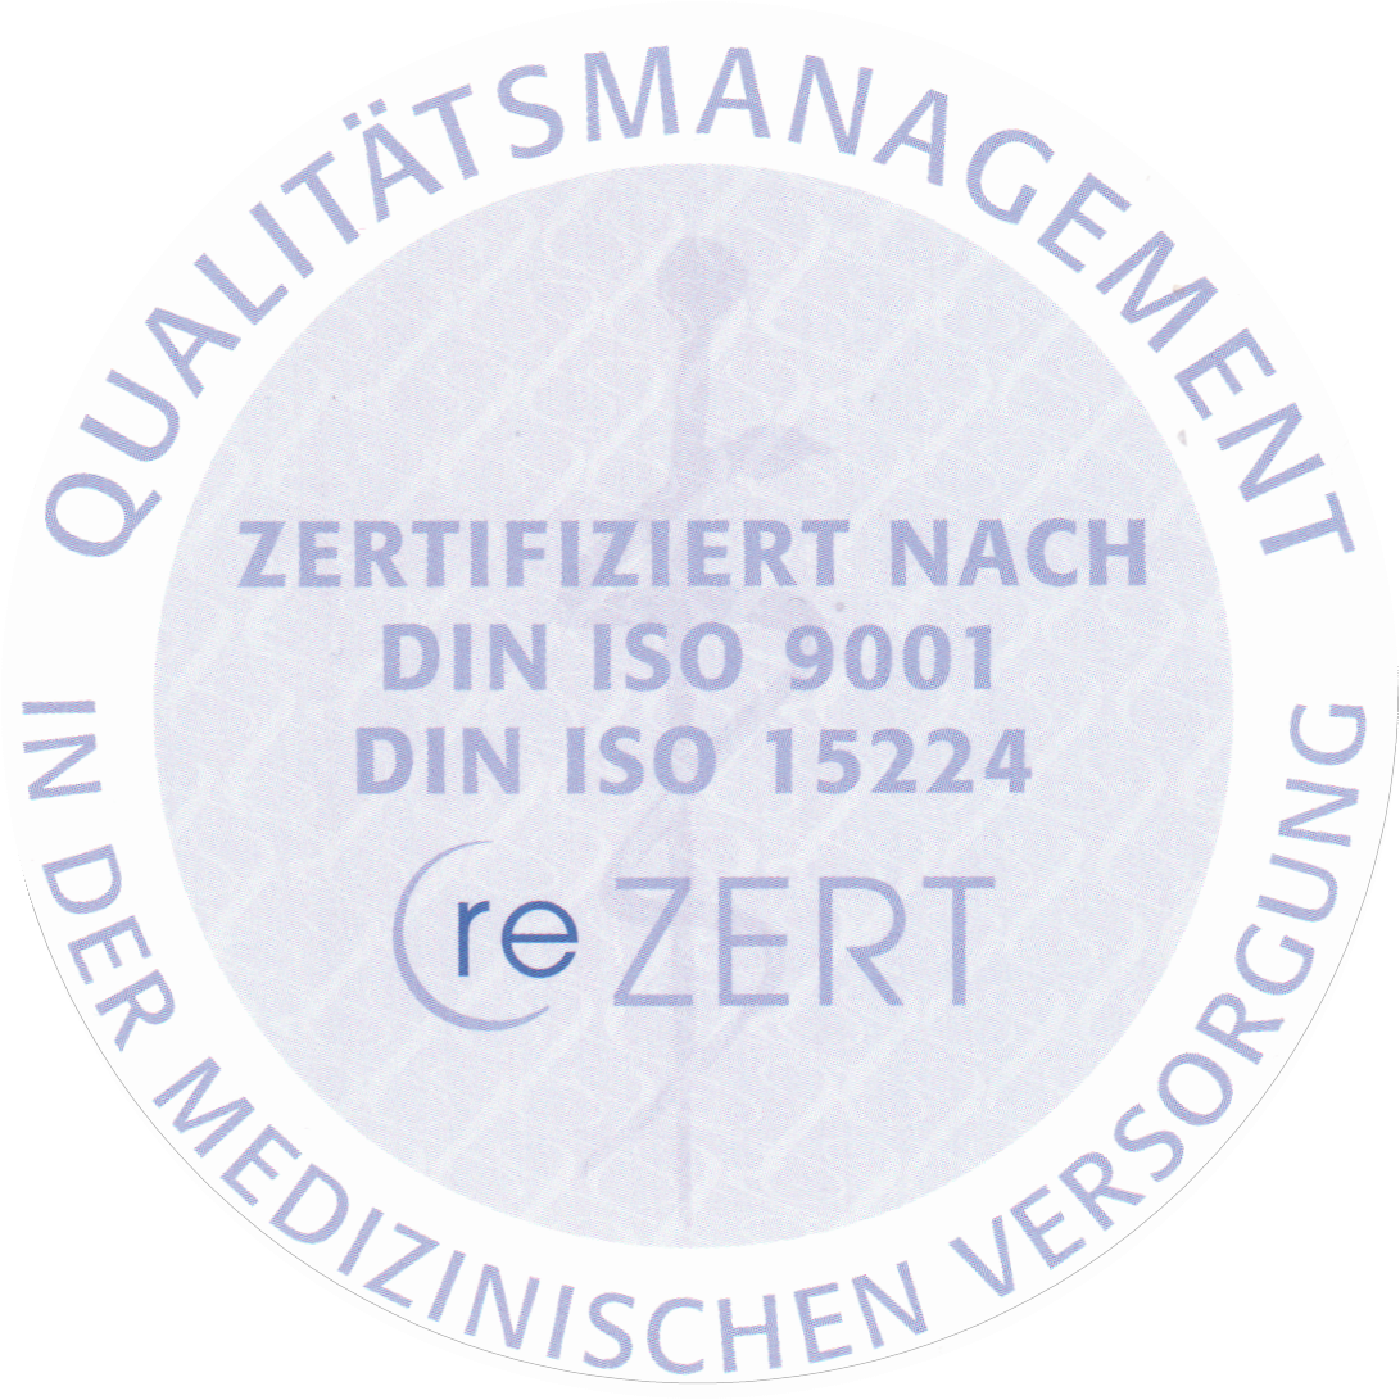 Unsere Praxis ist nach DIN ISO EN 9001:2008 und DIN ISO EN 15224 zertifiziert.